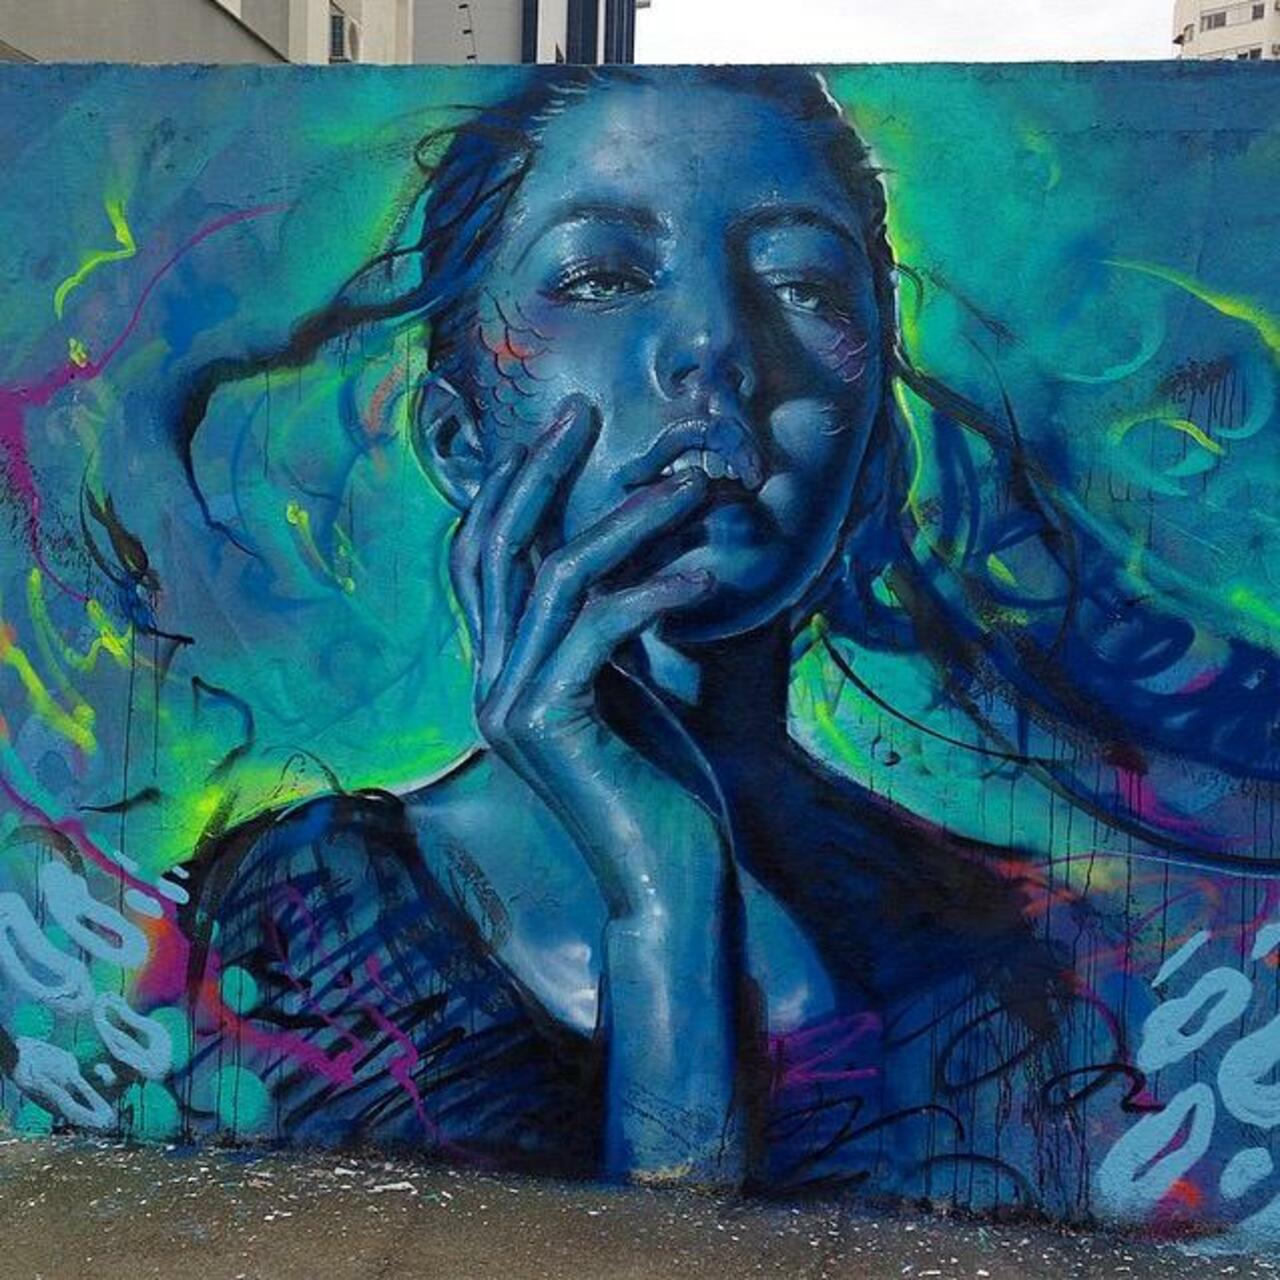 RT @GoogleStreetArt: Thiago Valdi new Street Art piece titled 'Day Dreamer'

#art #mural #graffiti #streetart http://t.co/n0DAQgBNYl